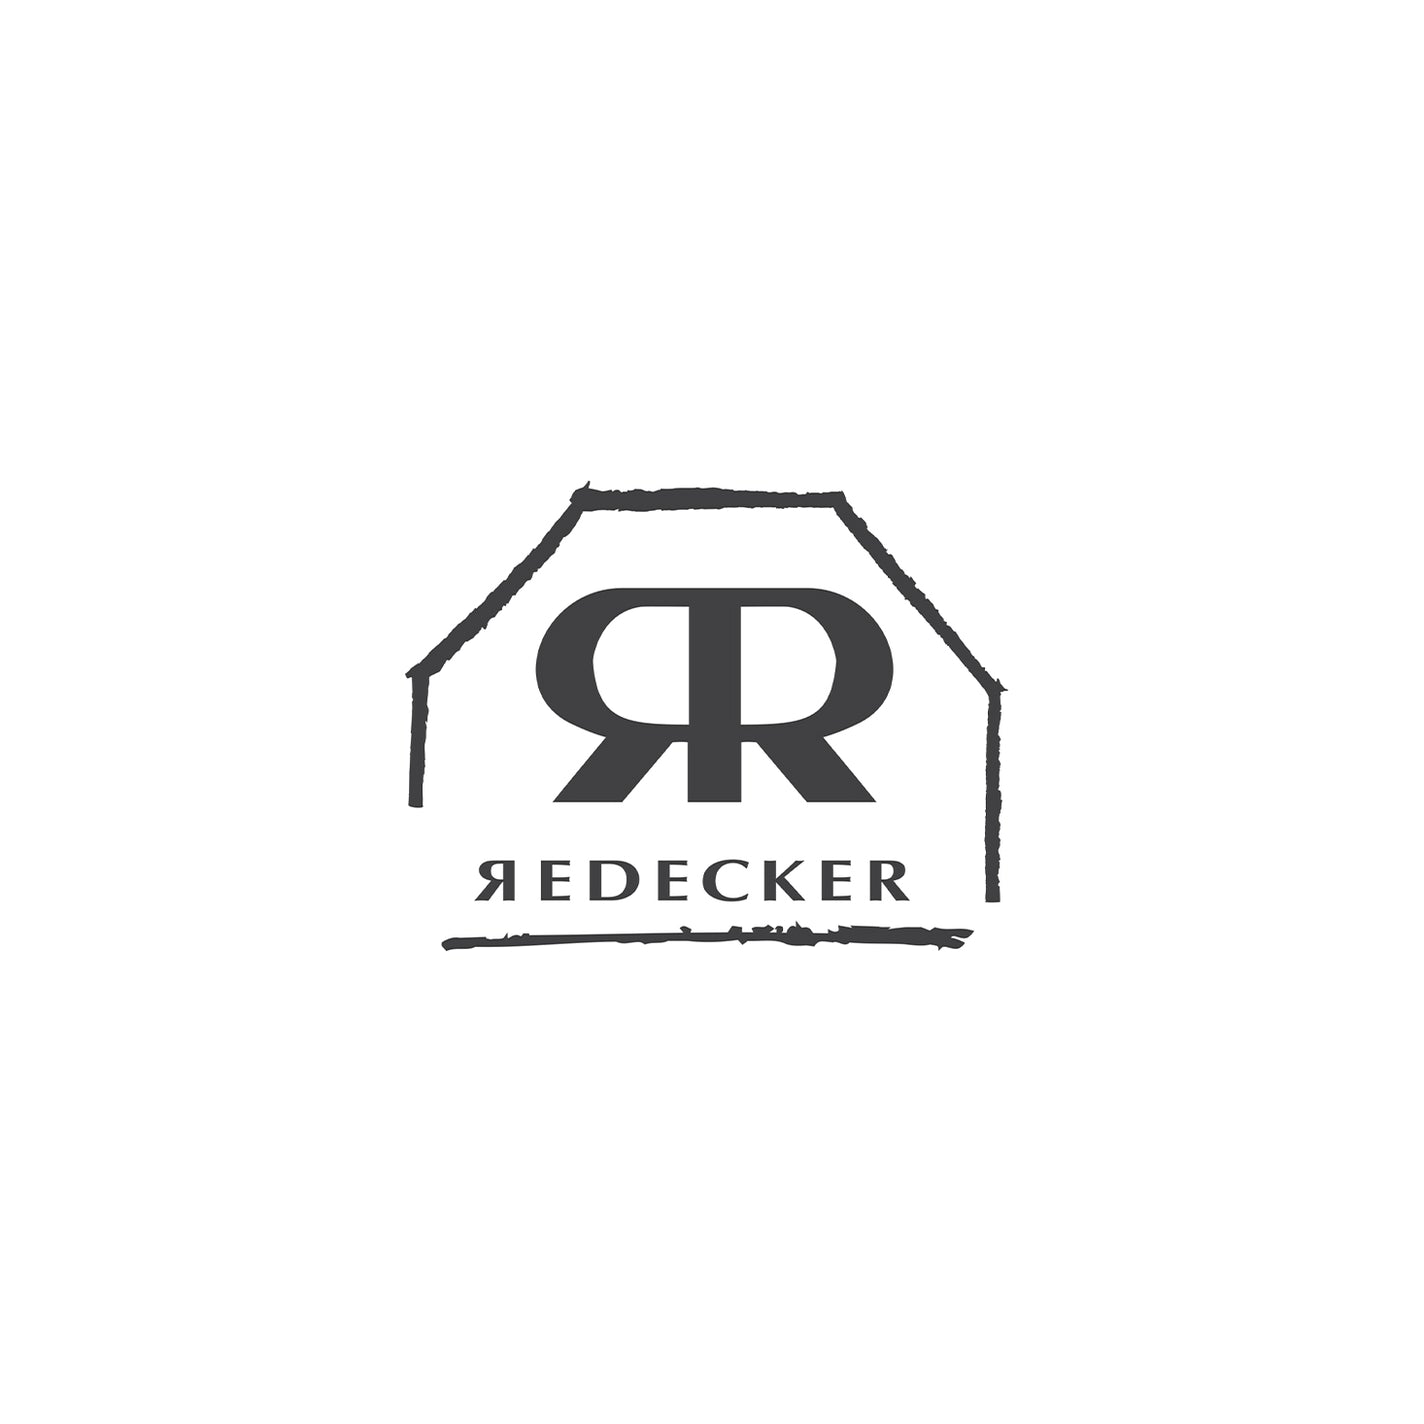 Redecker Gardener's Bundle - Value $135